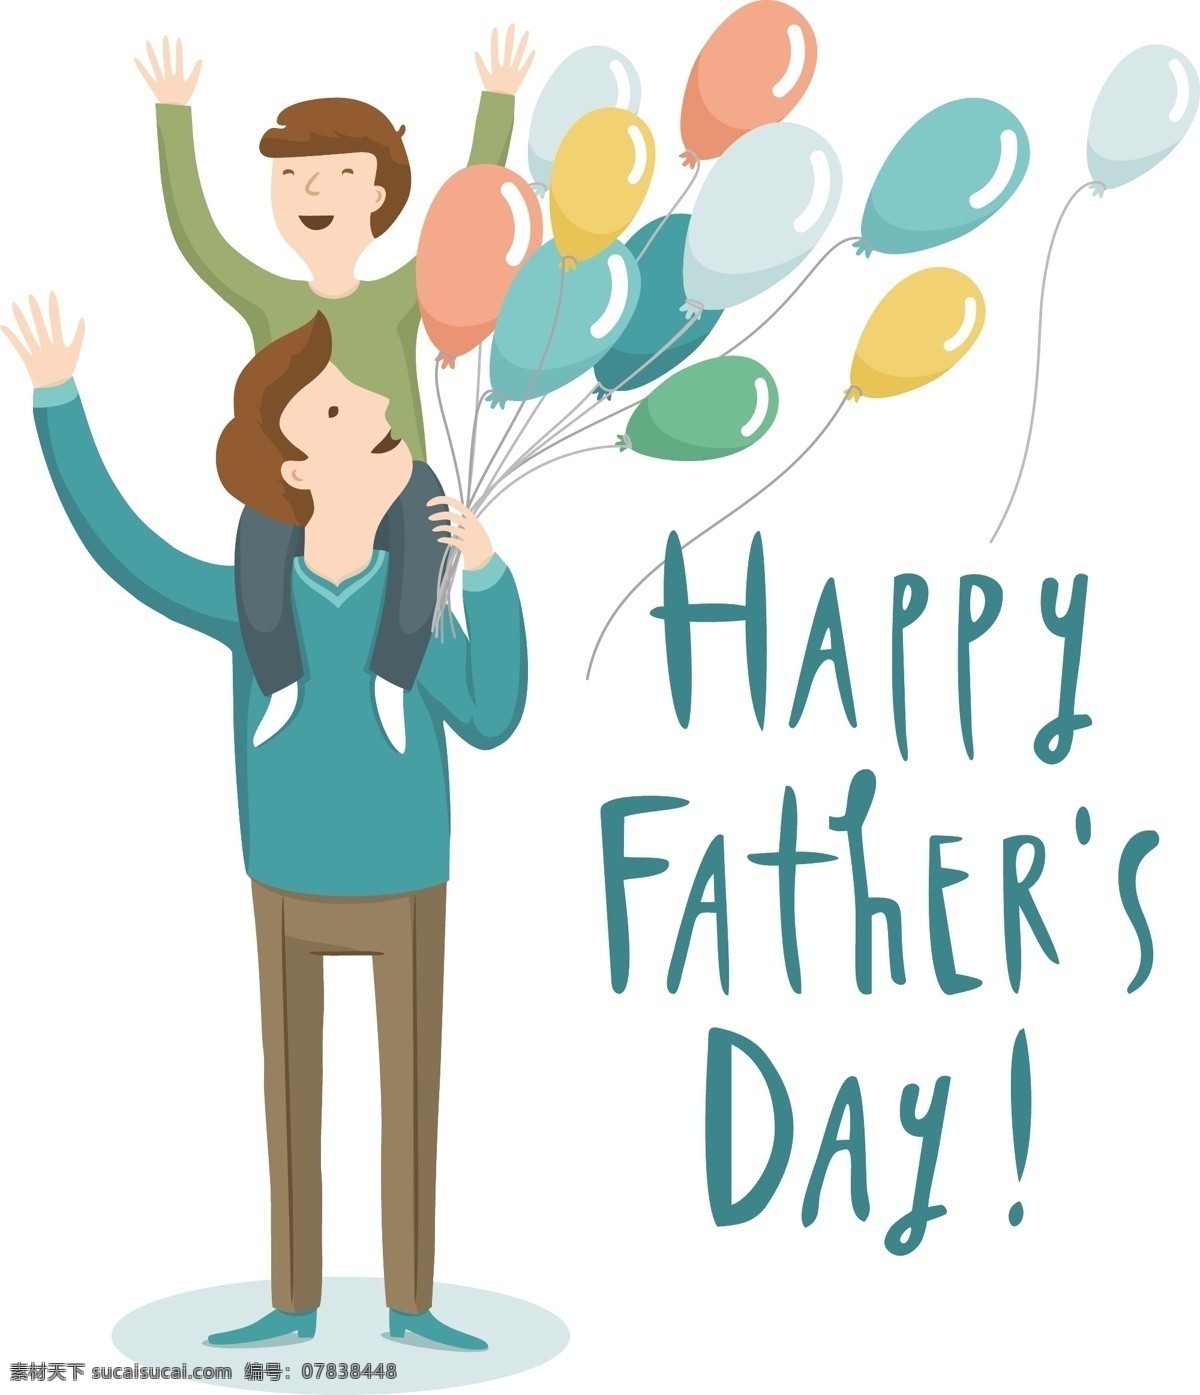 卡通 彩色 父子 欢呼 父亲节 元素 气球 英文 手绘 亲情 父爱 父亲节快乐 设计元素 装饰图案